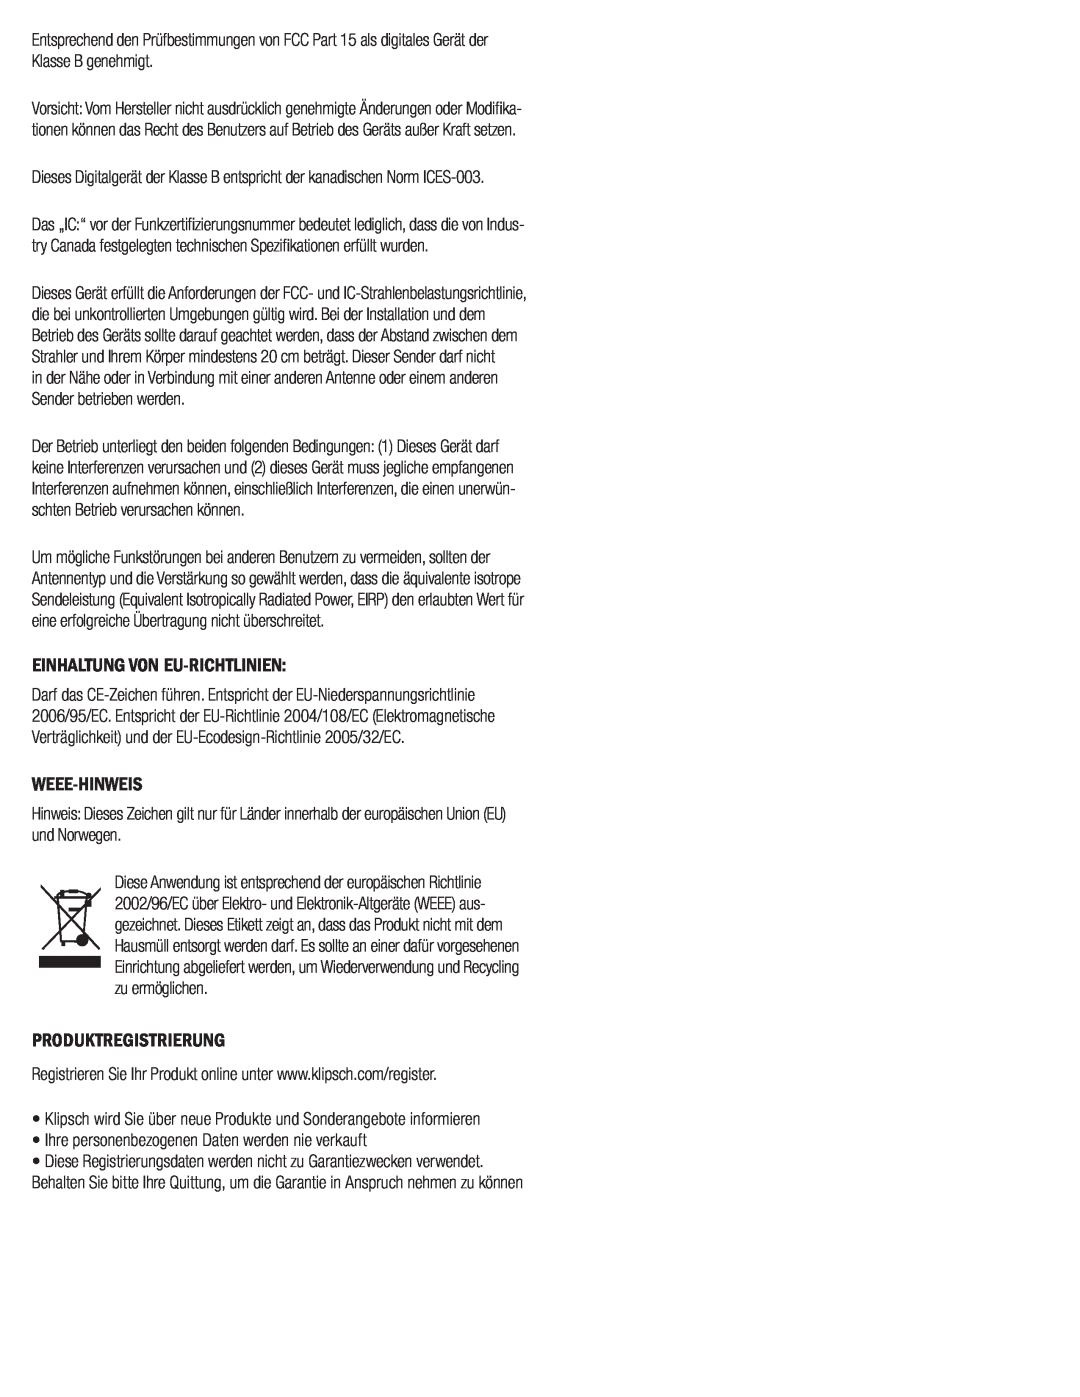 Klipsch SW-311 owner manual Einhaltung Von Eu-Richtlinien, Weee-Hinweis, Produktregistrierung 